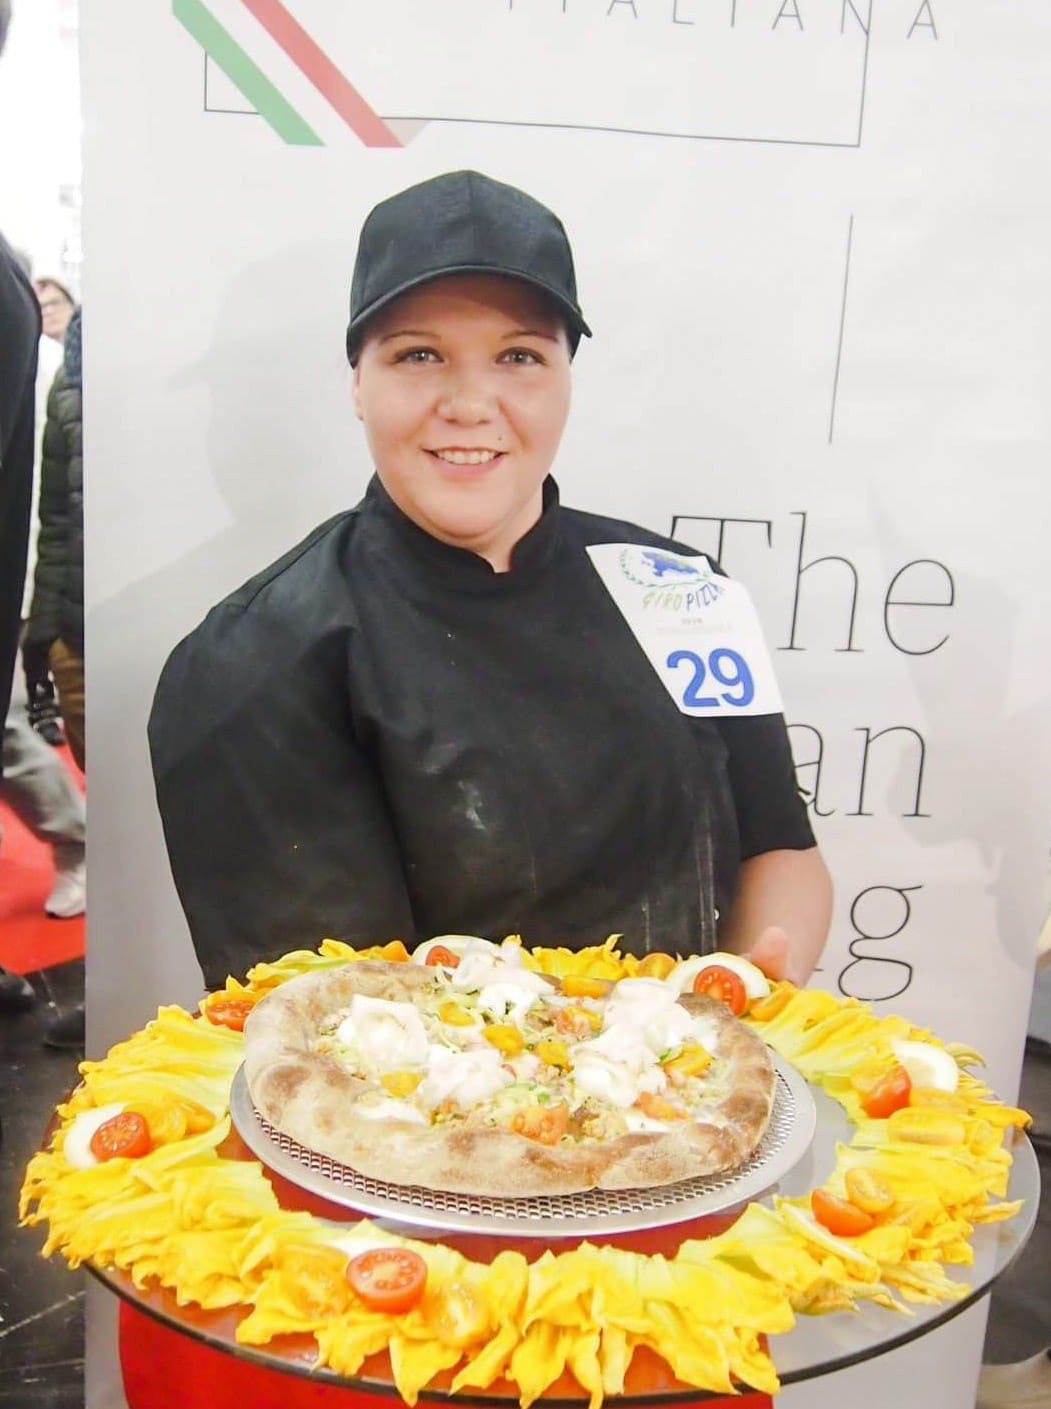 Nicole Batzella campionessa europea della pizza